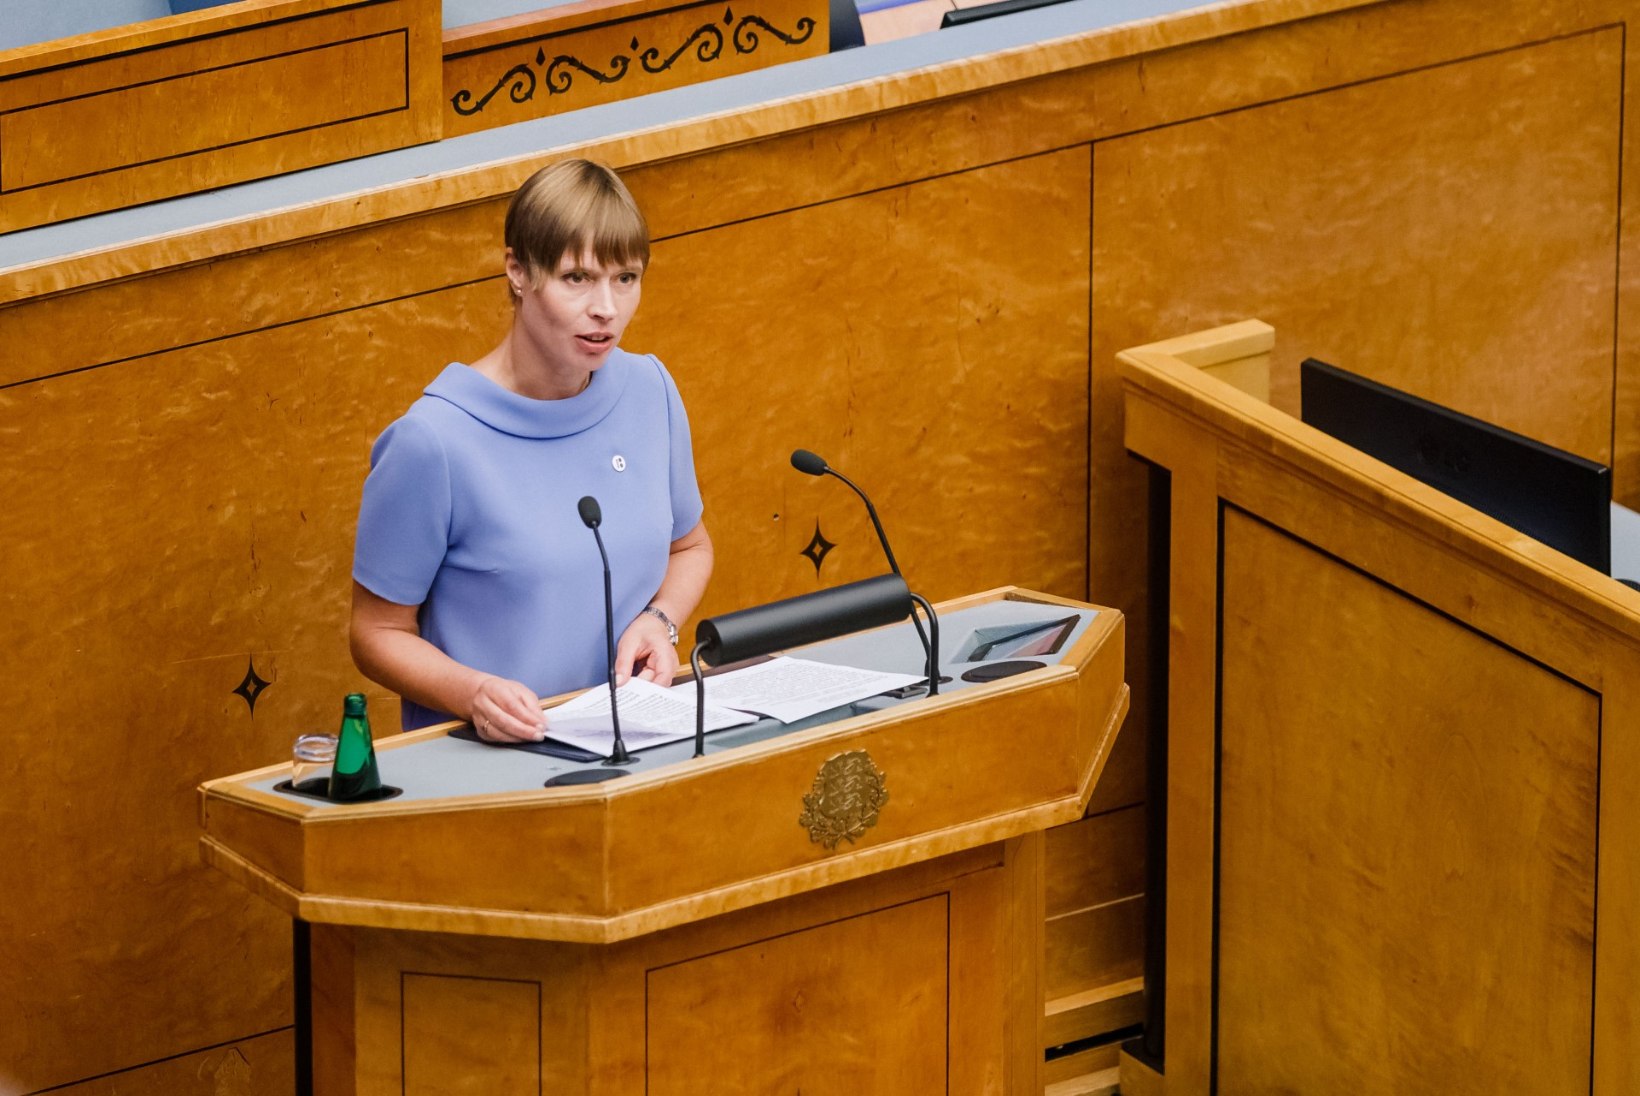 Kersti Kaljulaidil on Abhaasia eestlase kodakondsuse sekelduste pärast piinlik